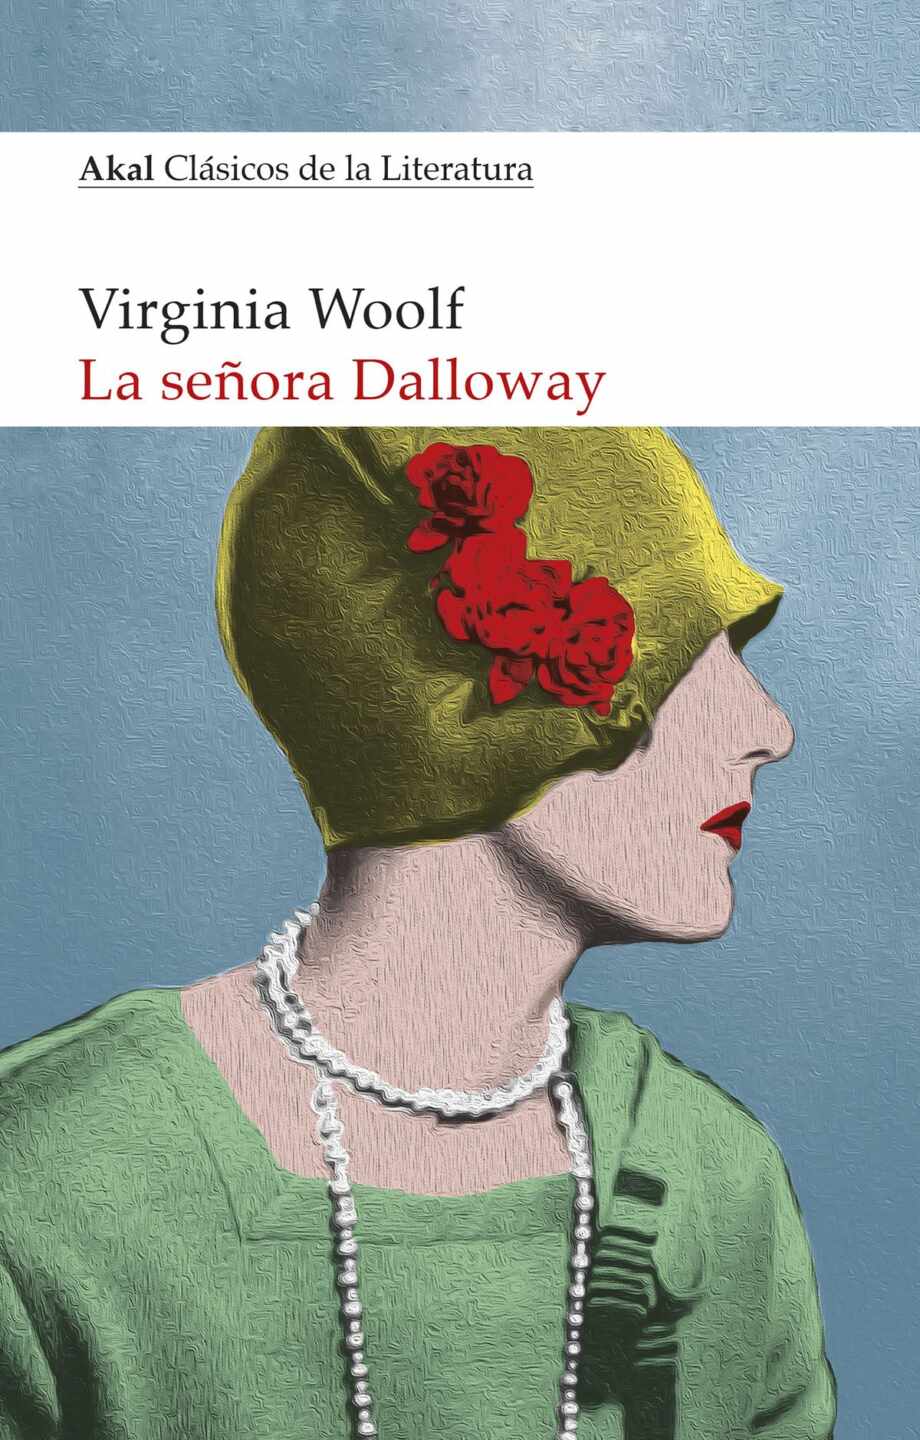 Portada del libro "La señora Dalloway", de Virginia Woolf